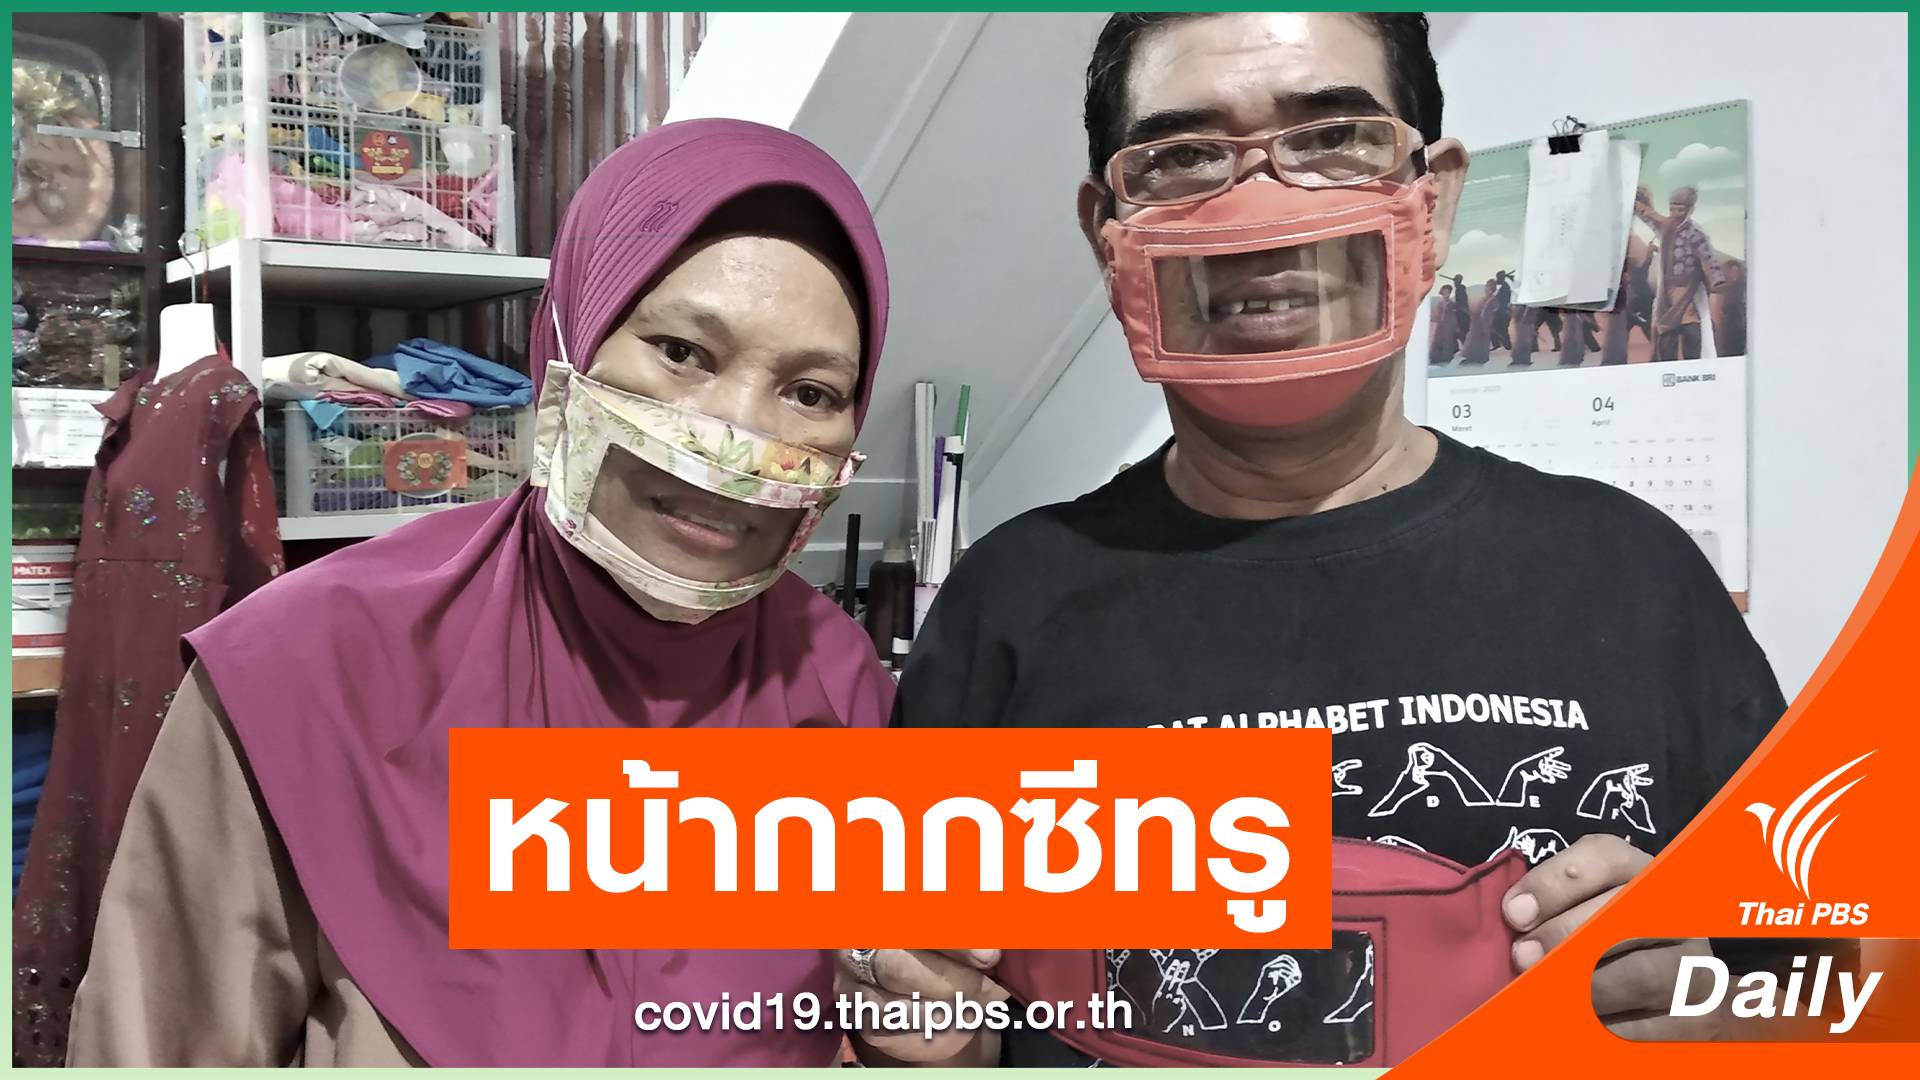 สามีภรรยาชาวอินโดนีเซีย ผลิตหน้ากากซีทรูสำหรับคนหูหนวก 